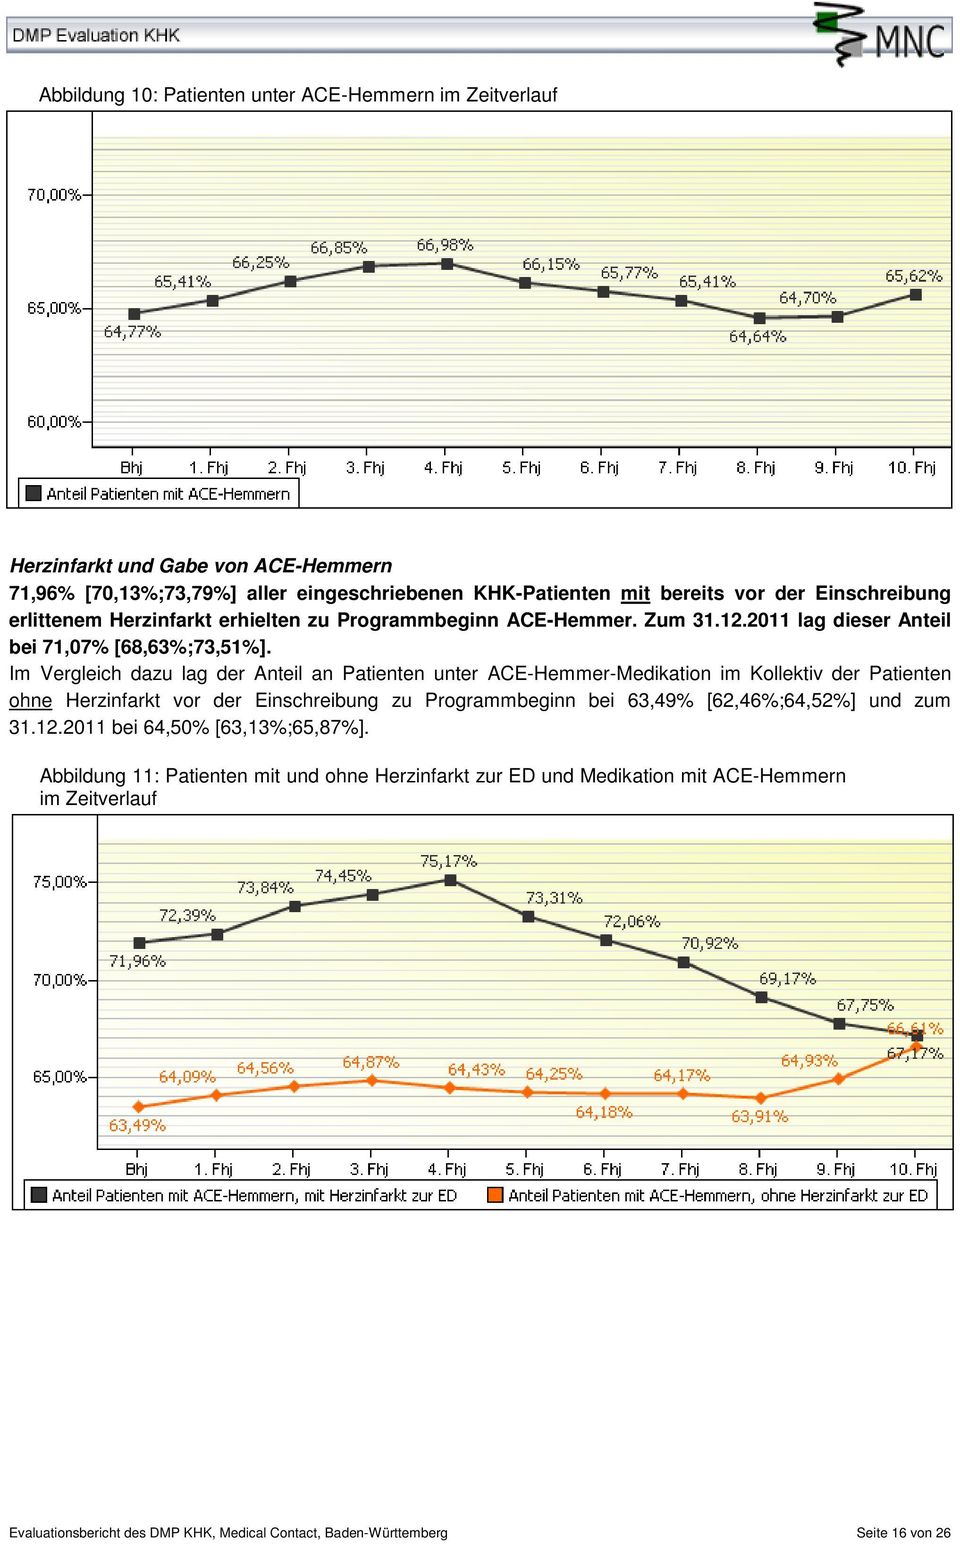 Im Vergleich dazu lag der Anteil an Patienten unter ACE-Hemmer-Medikation im Kollektiv der Patienten ohne Herzinfarkt vor der Einschreibung zu Programmbeginn bei 63,49%